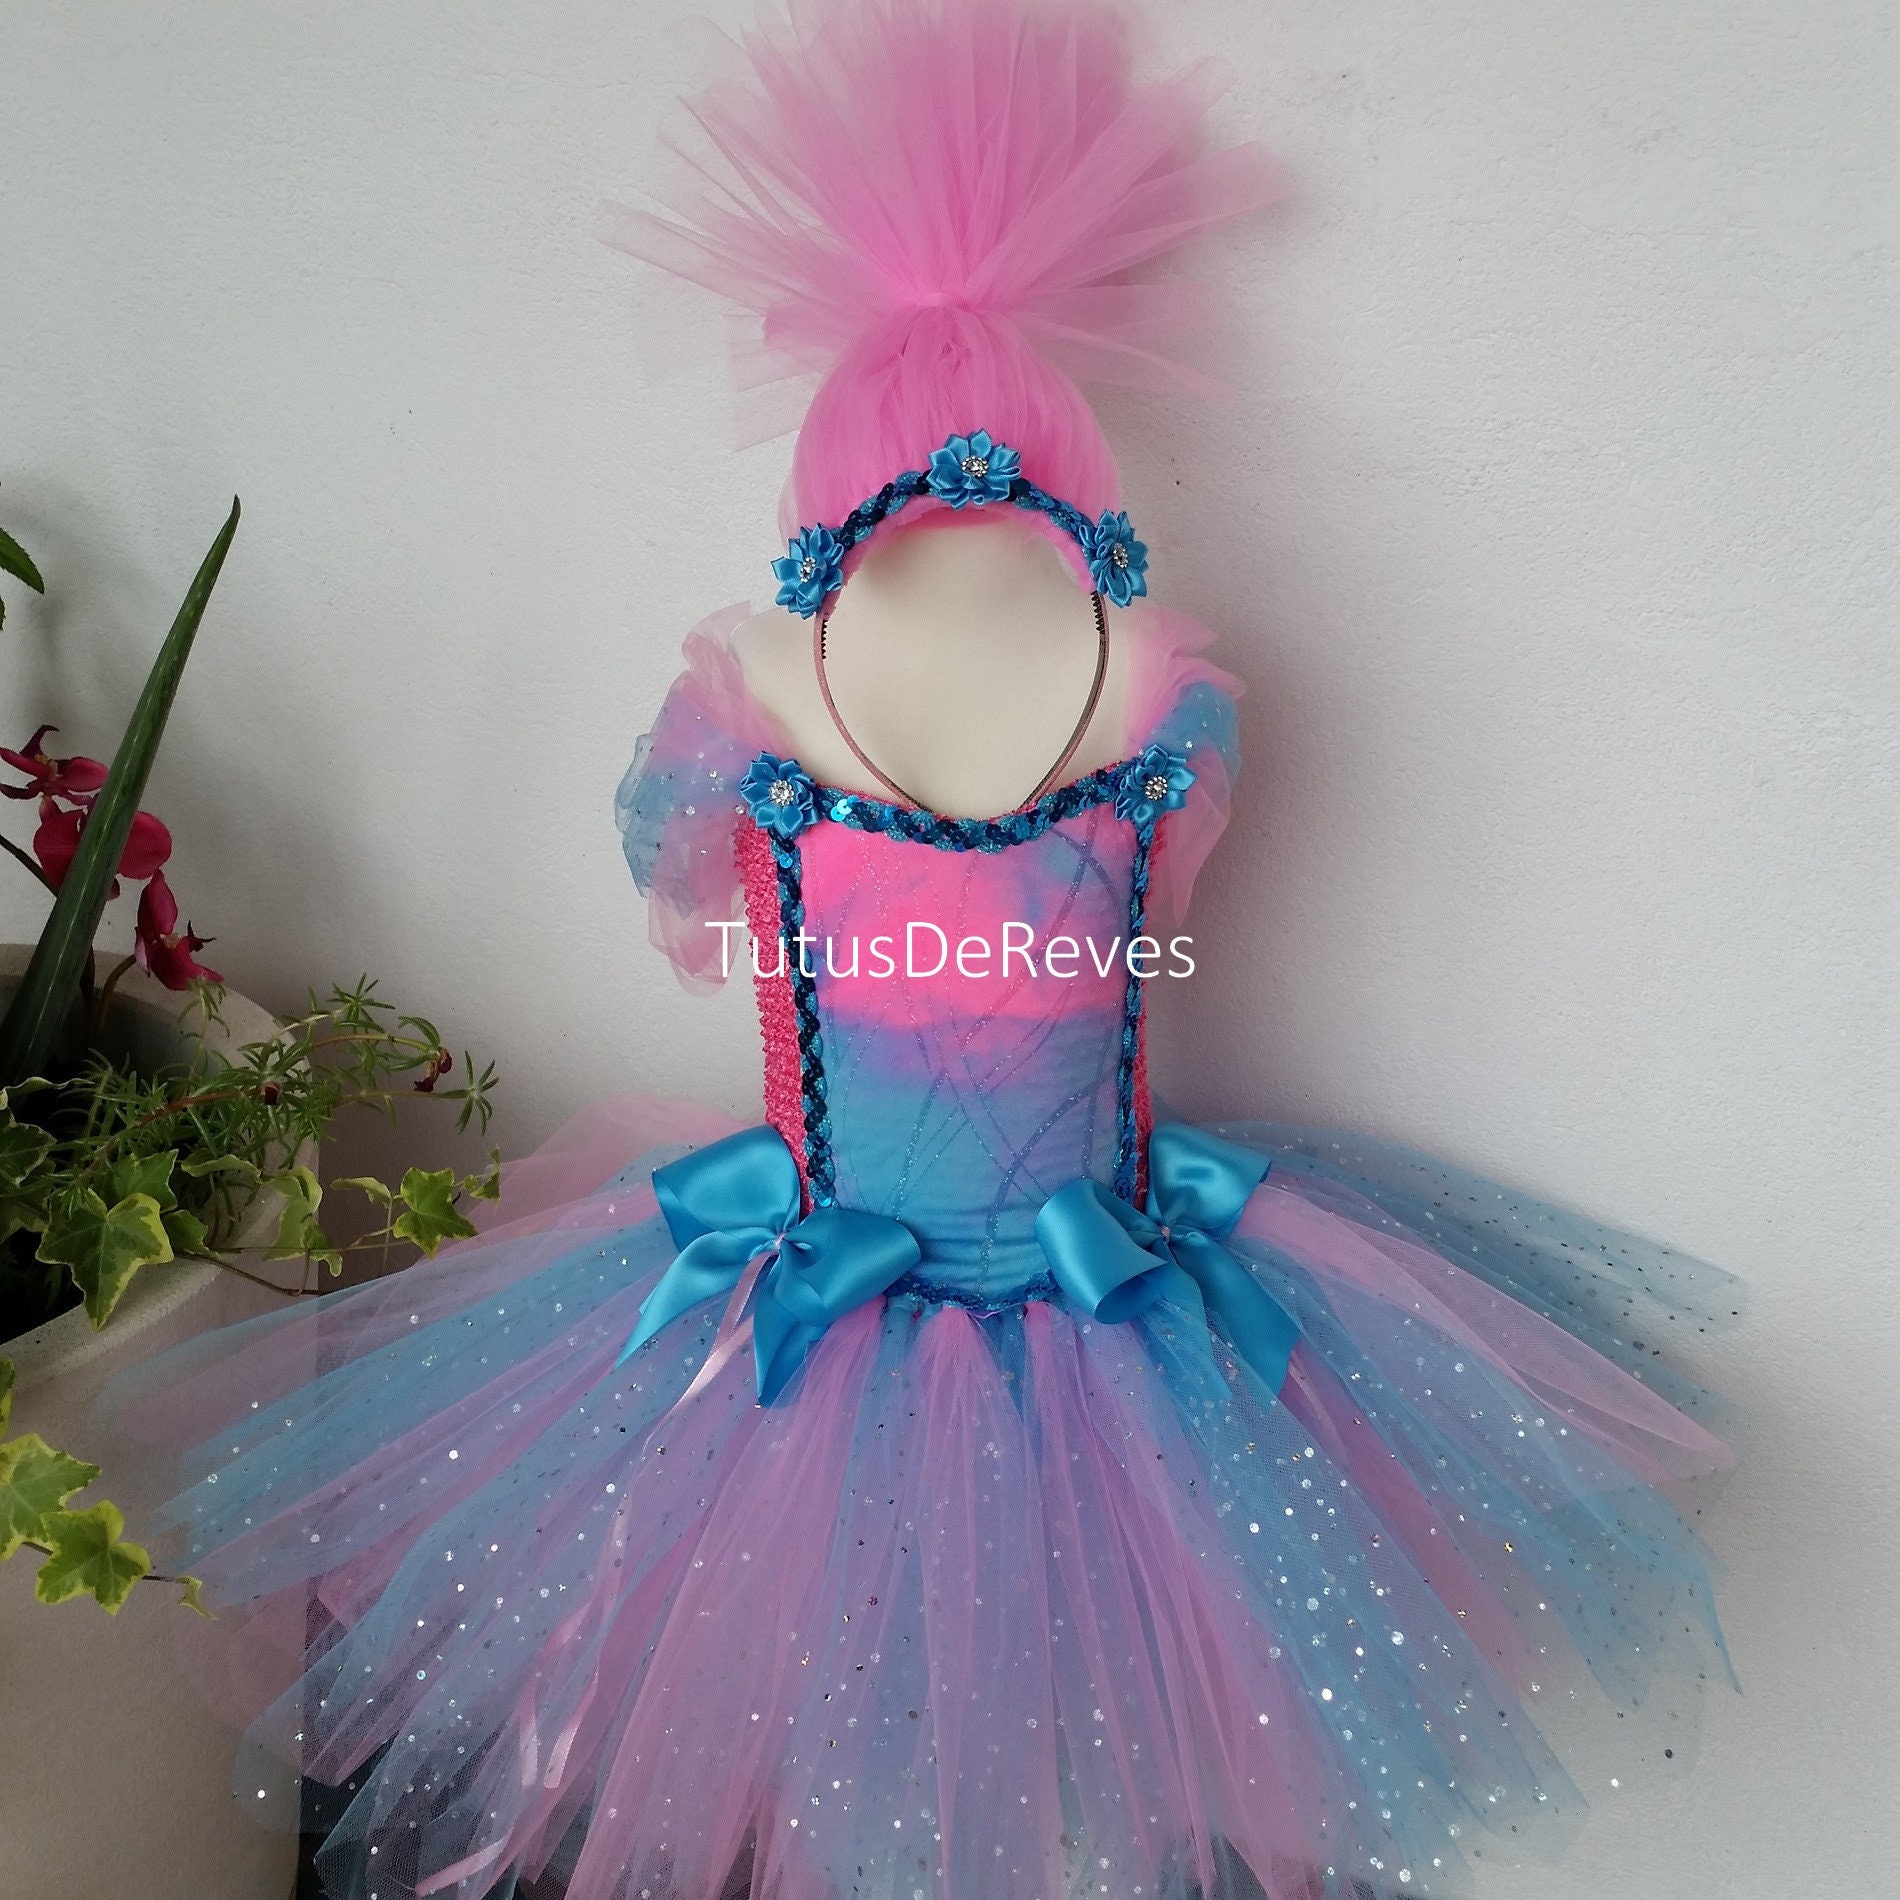 granddaughter gift Kleding Meisjeskleding Rokken Royal blue tutu costume Tutu Tutus for girls tulle skirt dress up 